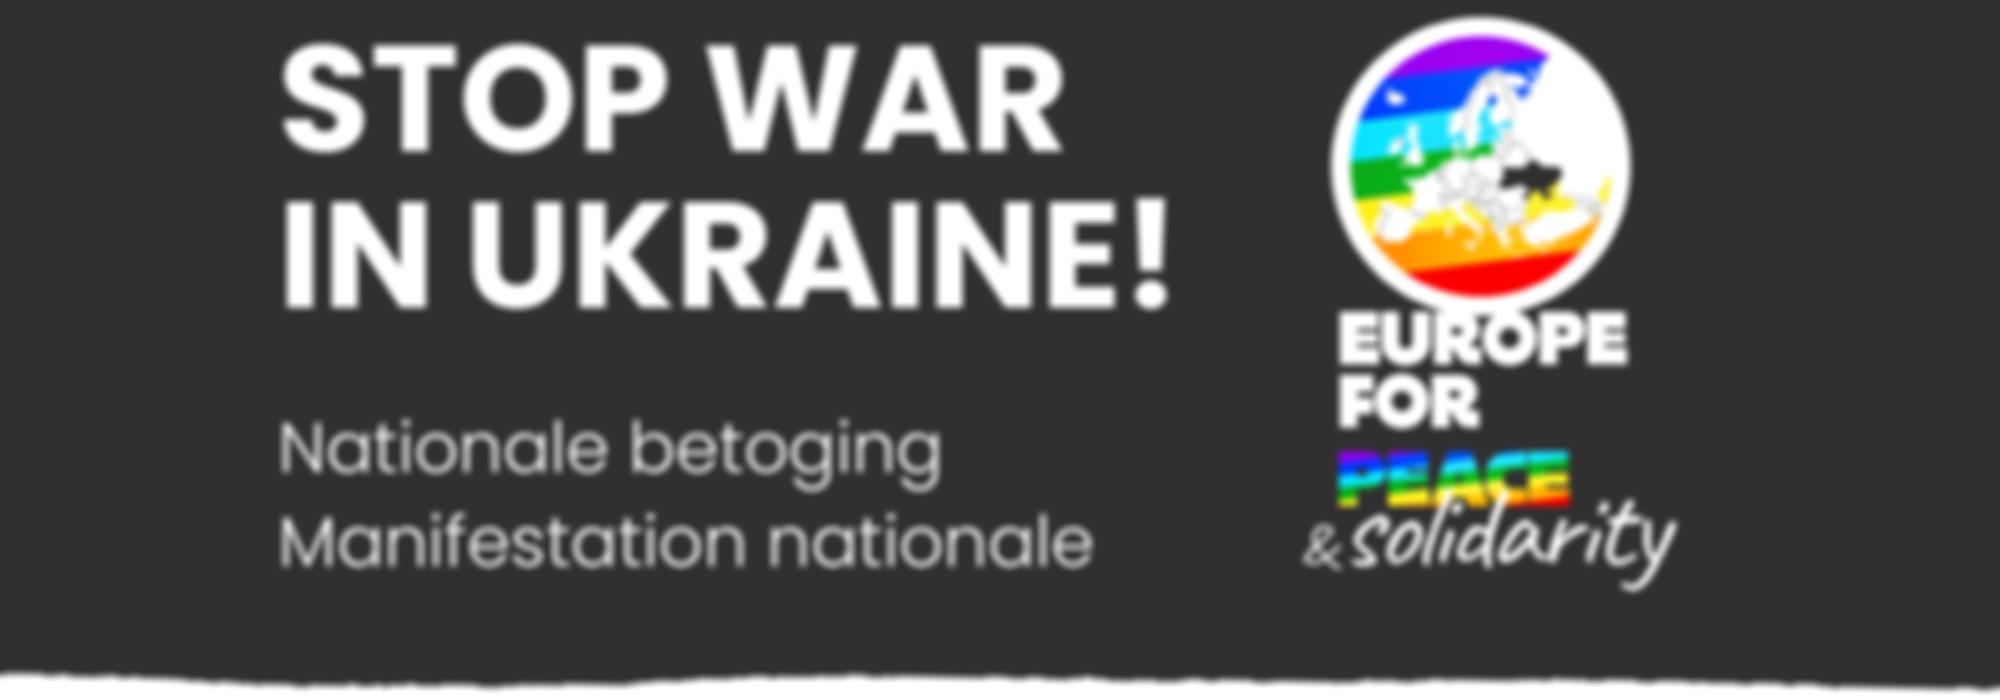 een affiche waarop 'stop war in ukraine' staat